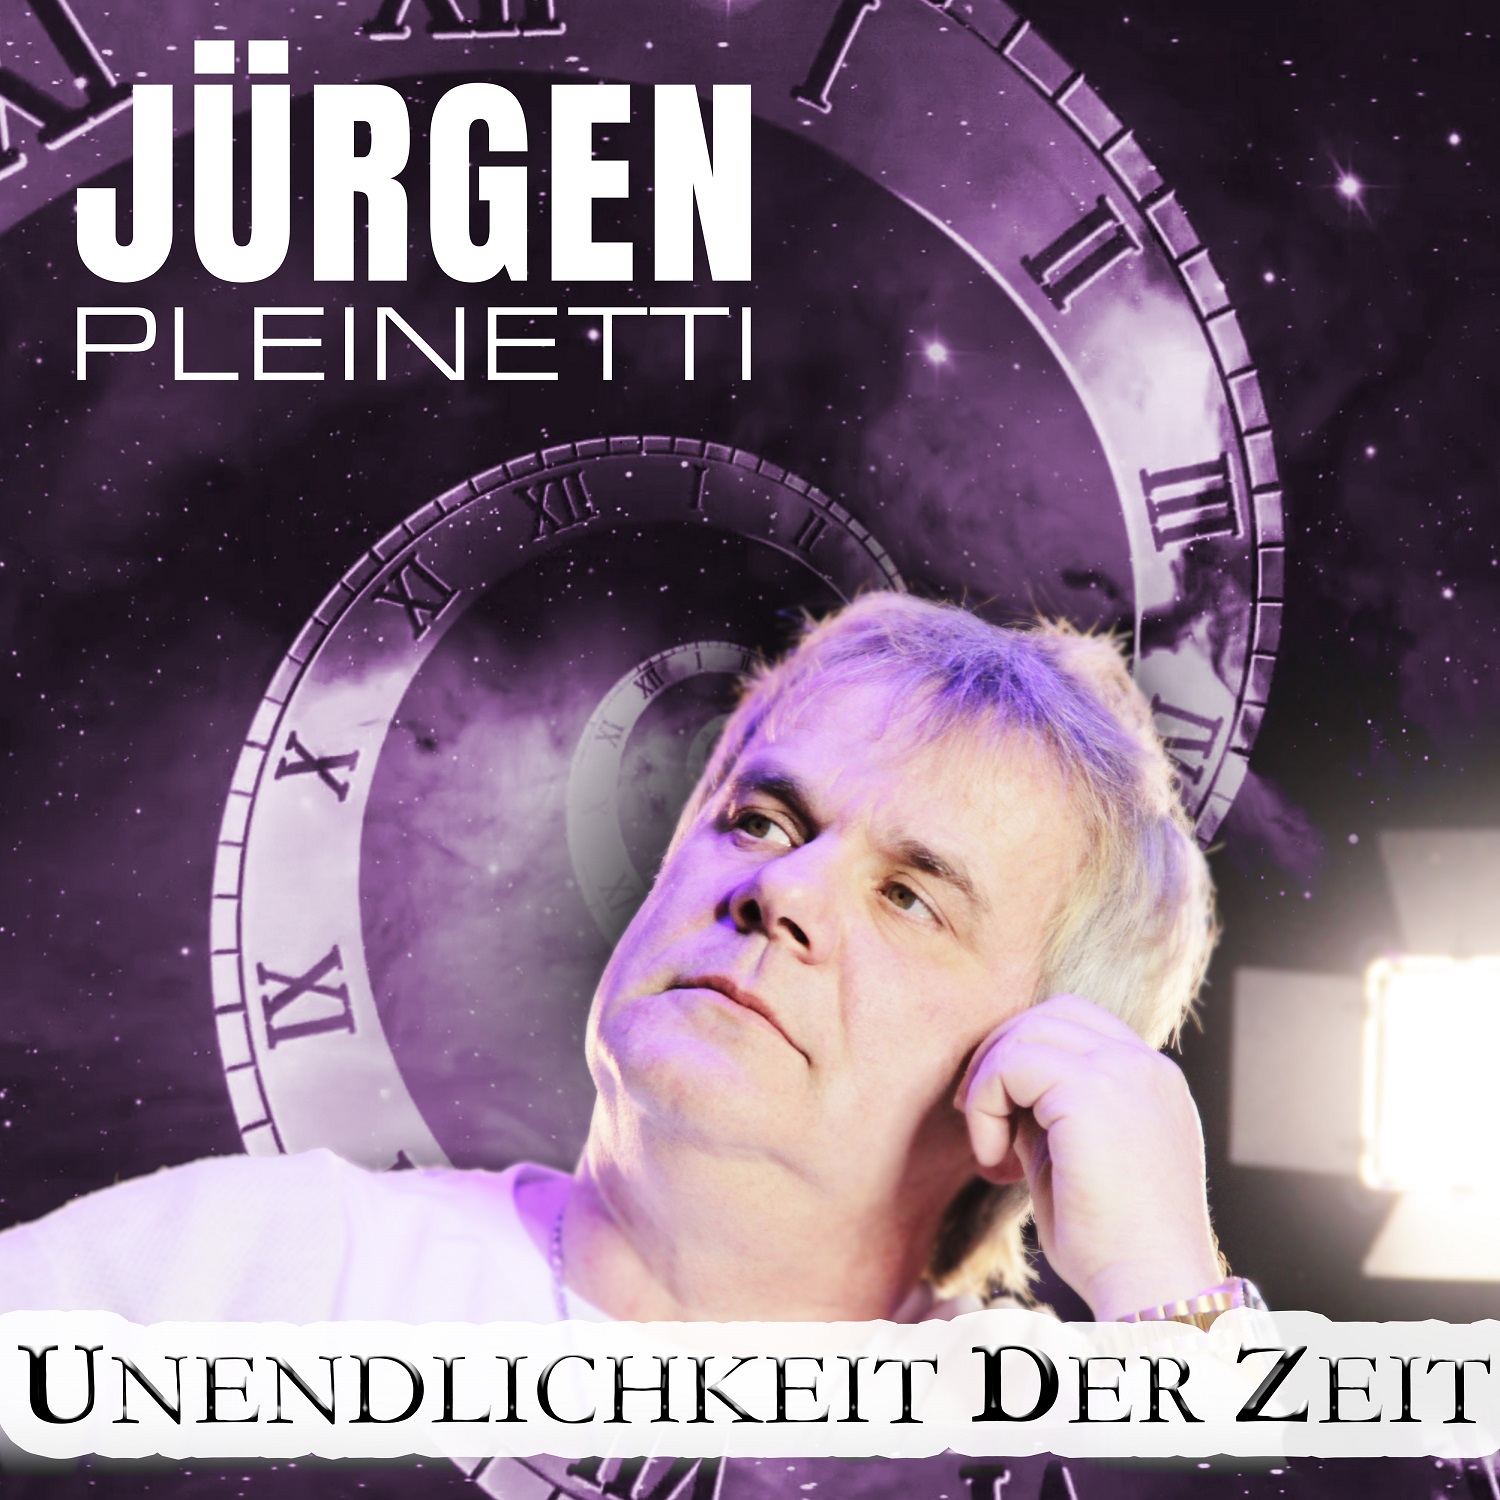 Jrgen Pleinetti - Unendlichkeit der Zeit - Cover1.jpg